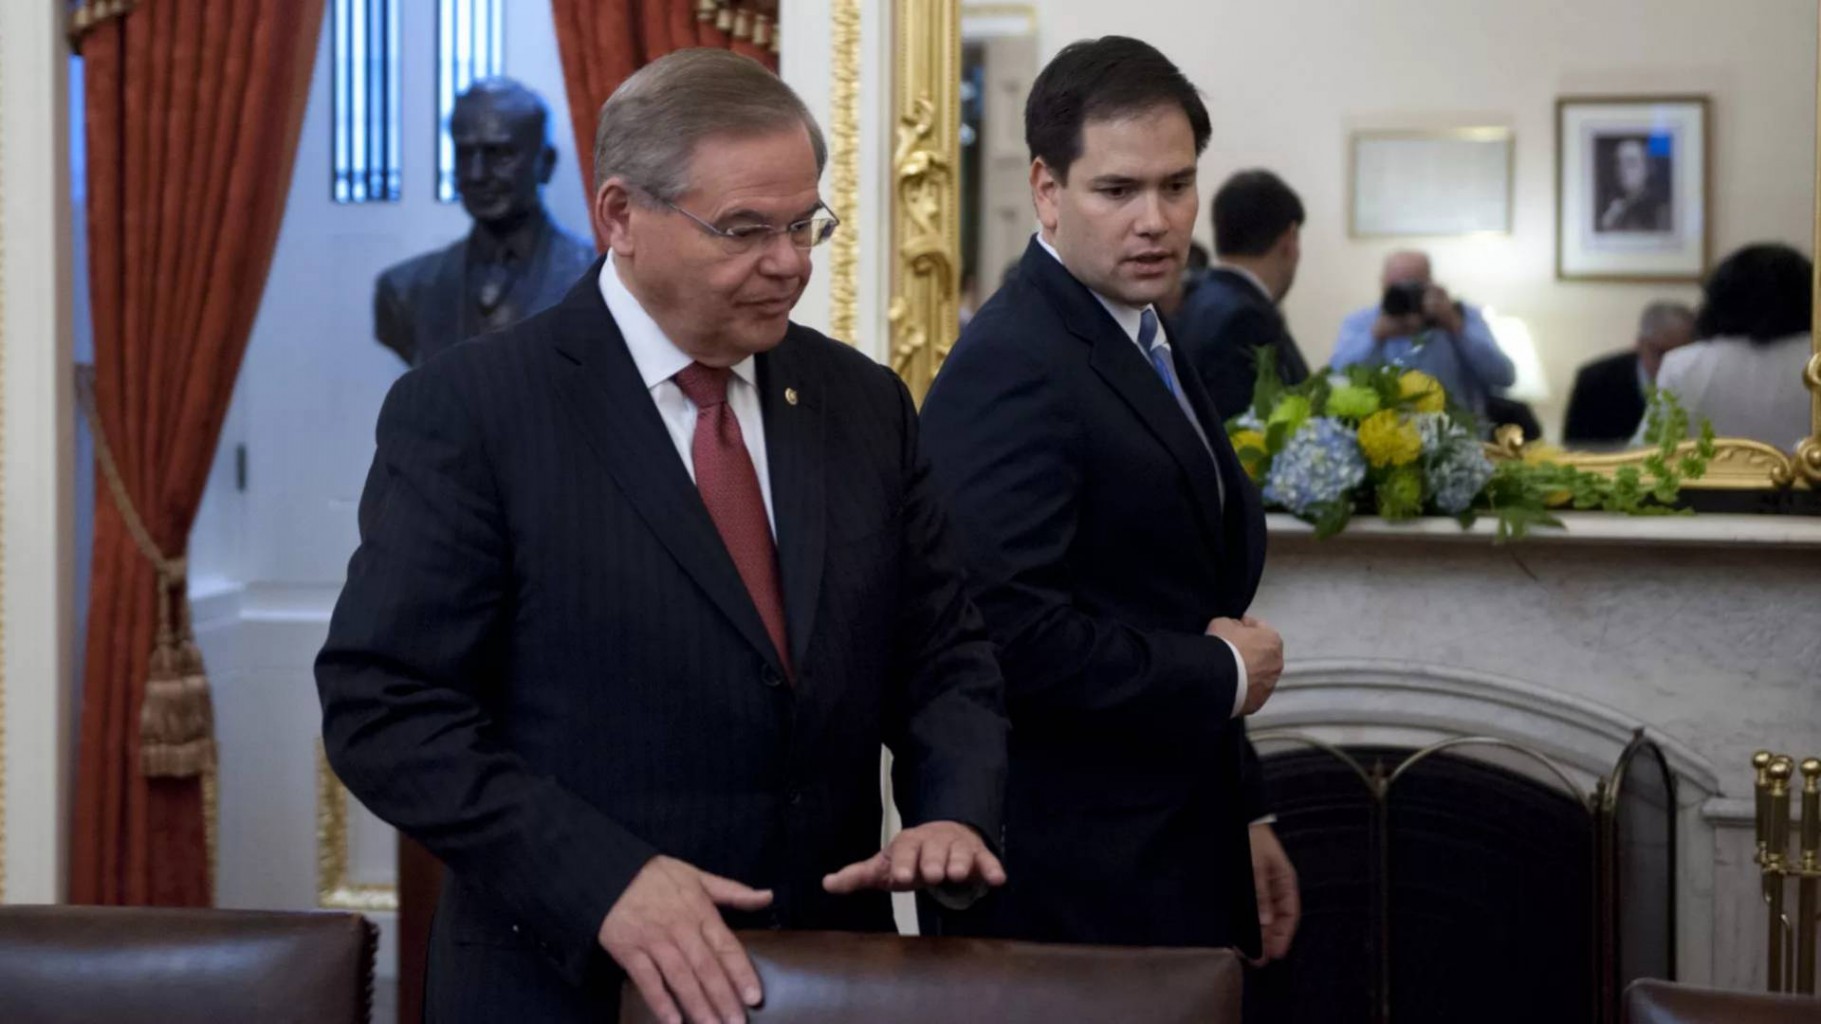 Menéndez, Rubio Piden a la Secretaría del Tesoro que Responsabilice a Empresas Fantasmas que Ayudan al Régimen Cubano